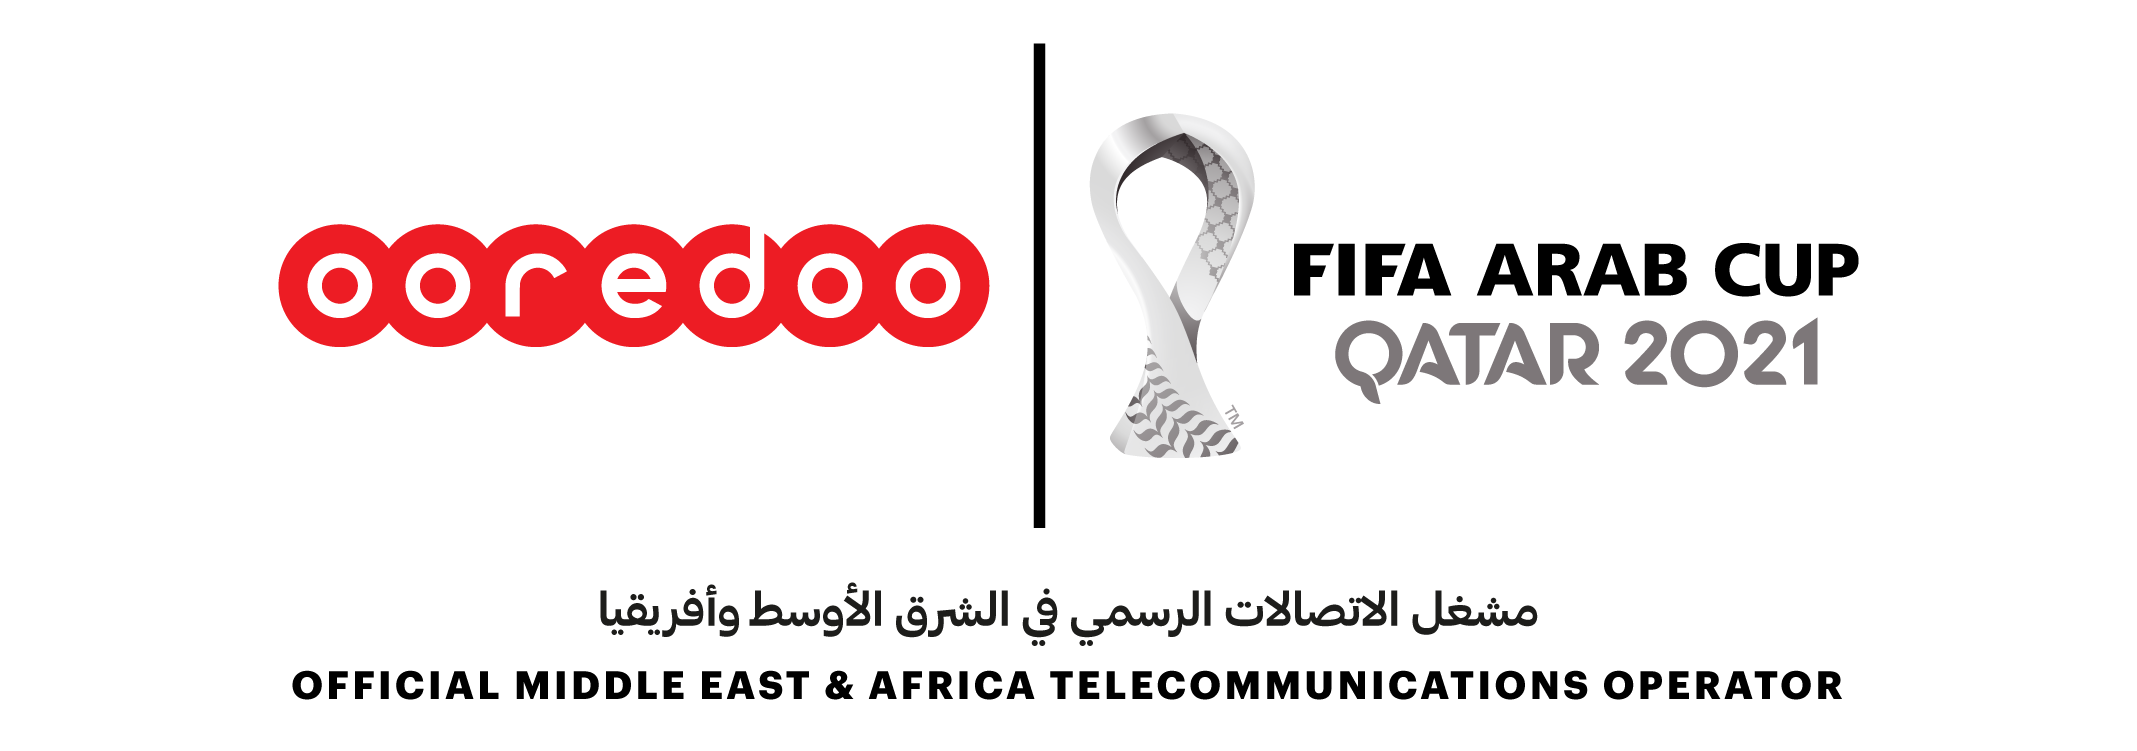 MENA  : Ooredoo nommé opérateur officiel de la Coupe du Monde de la FIFA2022™ et de la Coupe Arabe de la FIFA2021™